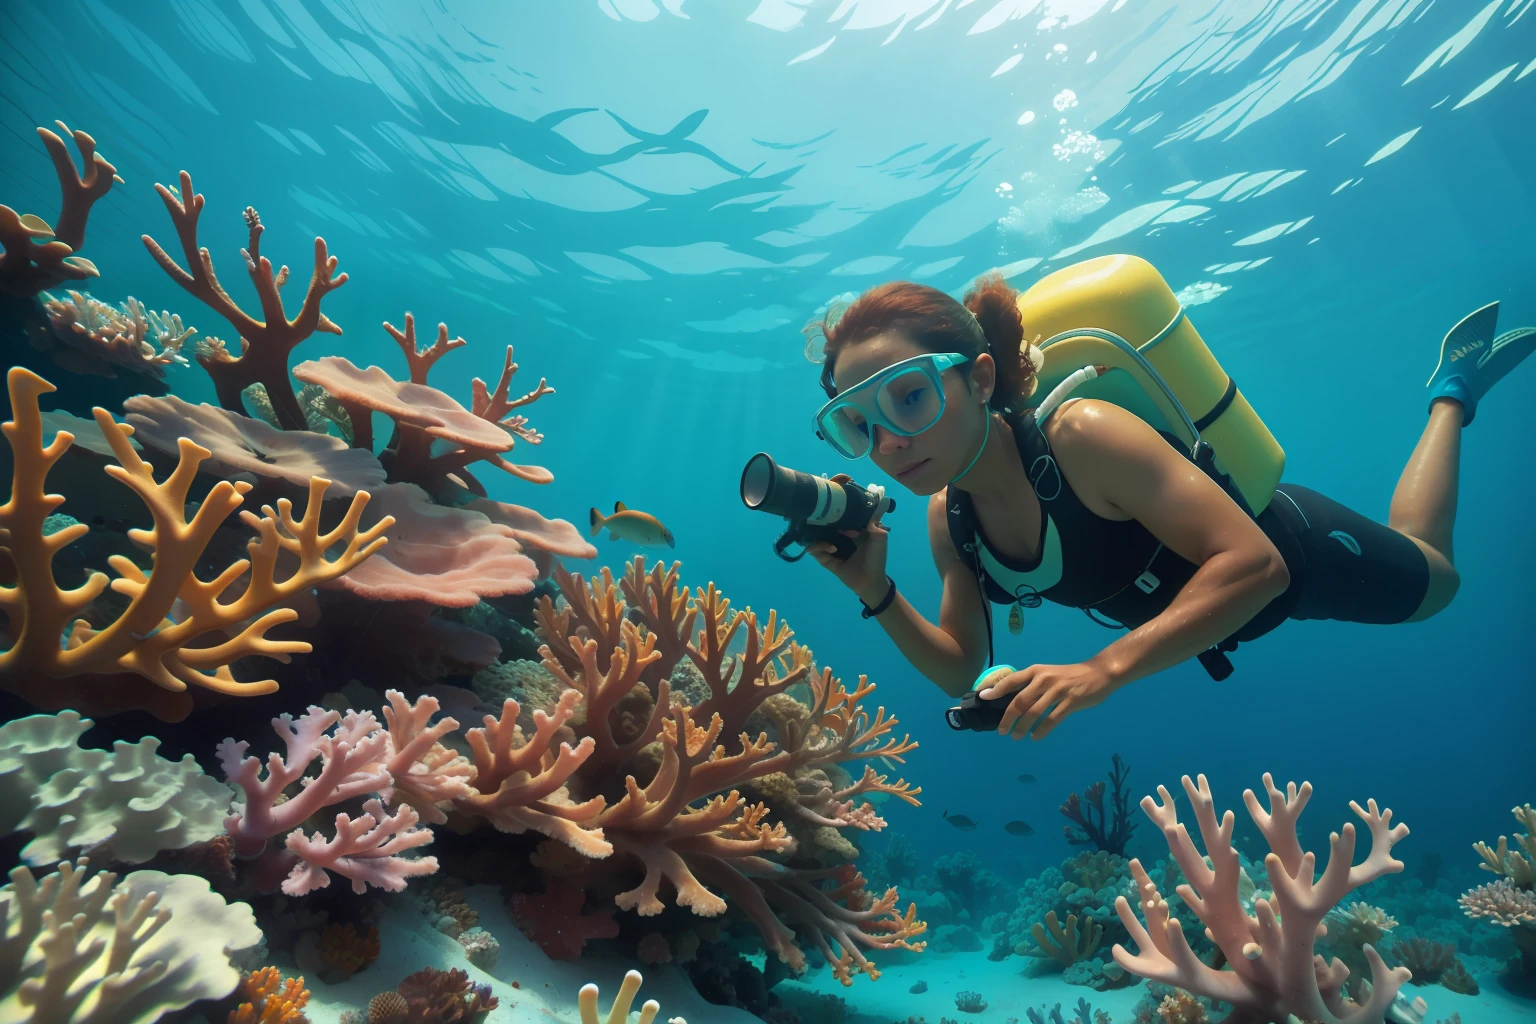 日付: 2013 国: バハマの説明: バハマの成人海洋生物学者が水中の活気あるサンゴ礁を注意深く観察している, 大気に環境管理の要素を加える.